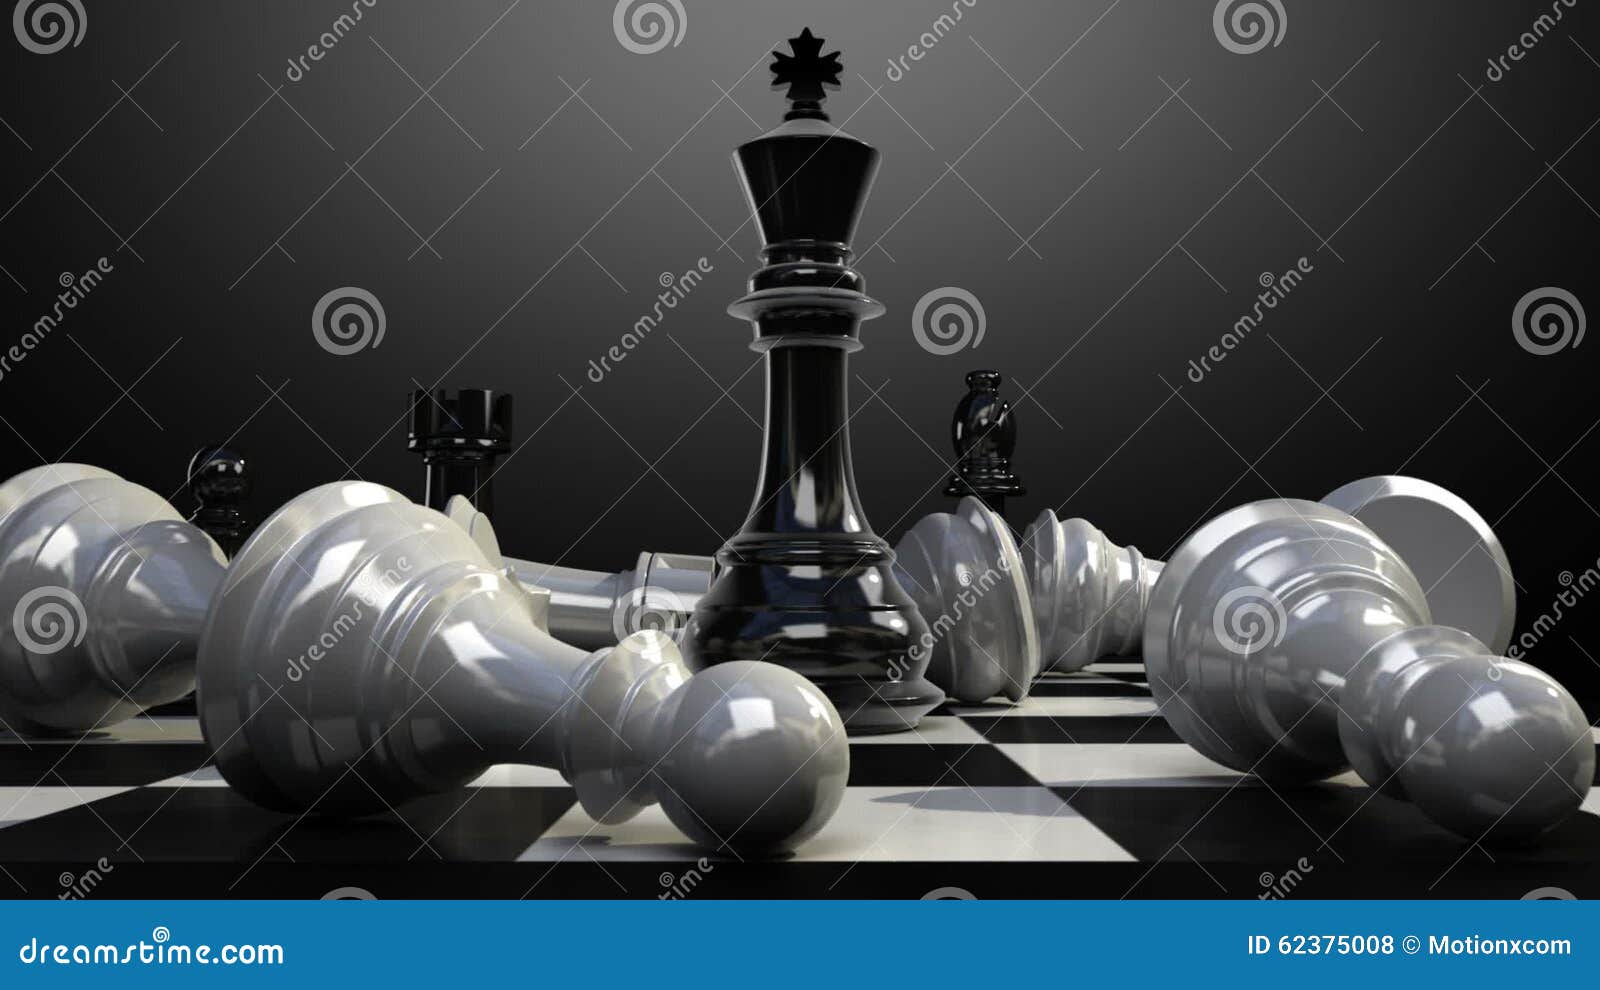 um cara de pele escura senta e pensa em um tabuleiro de xadrez